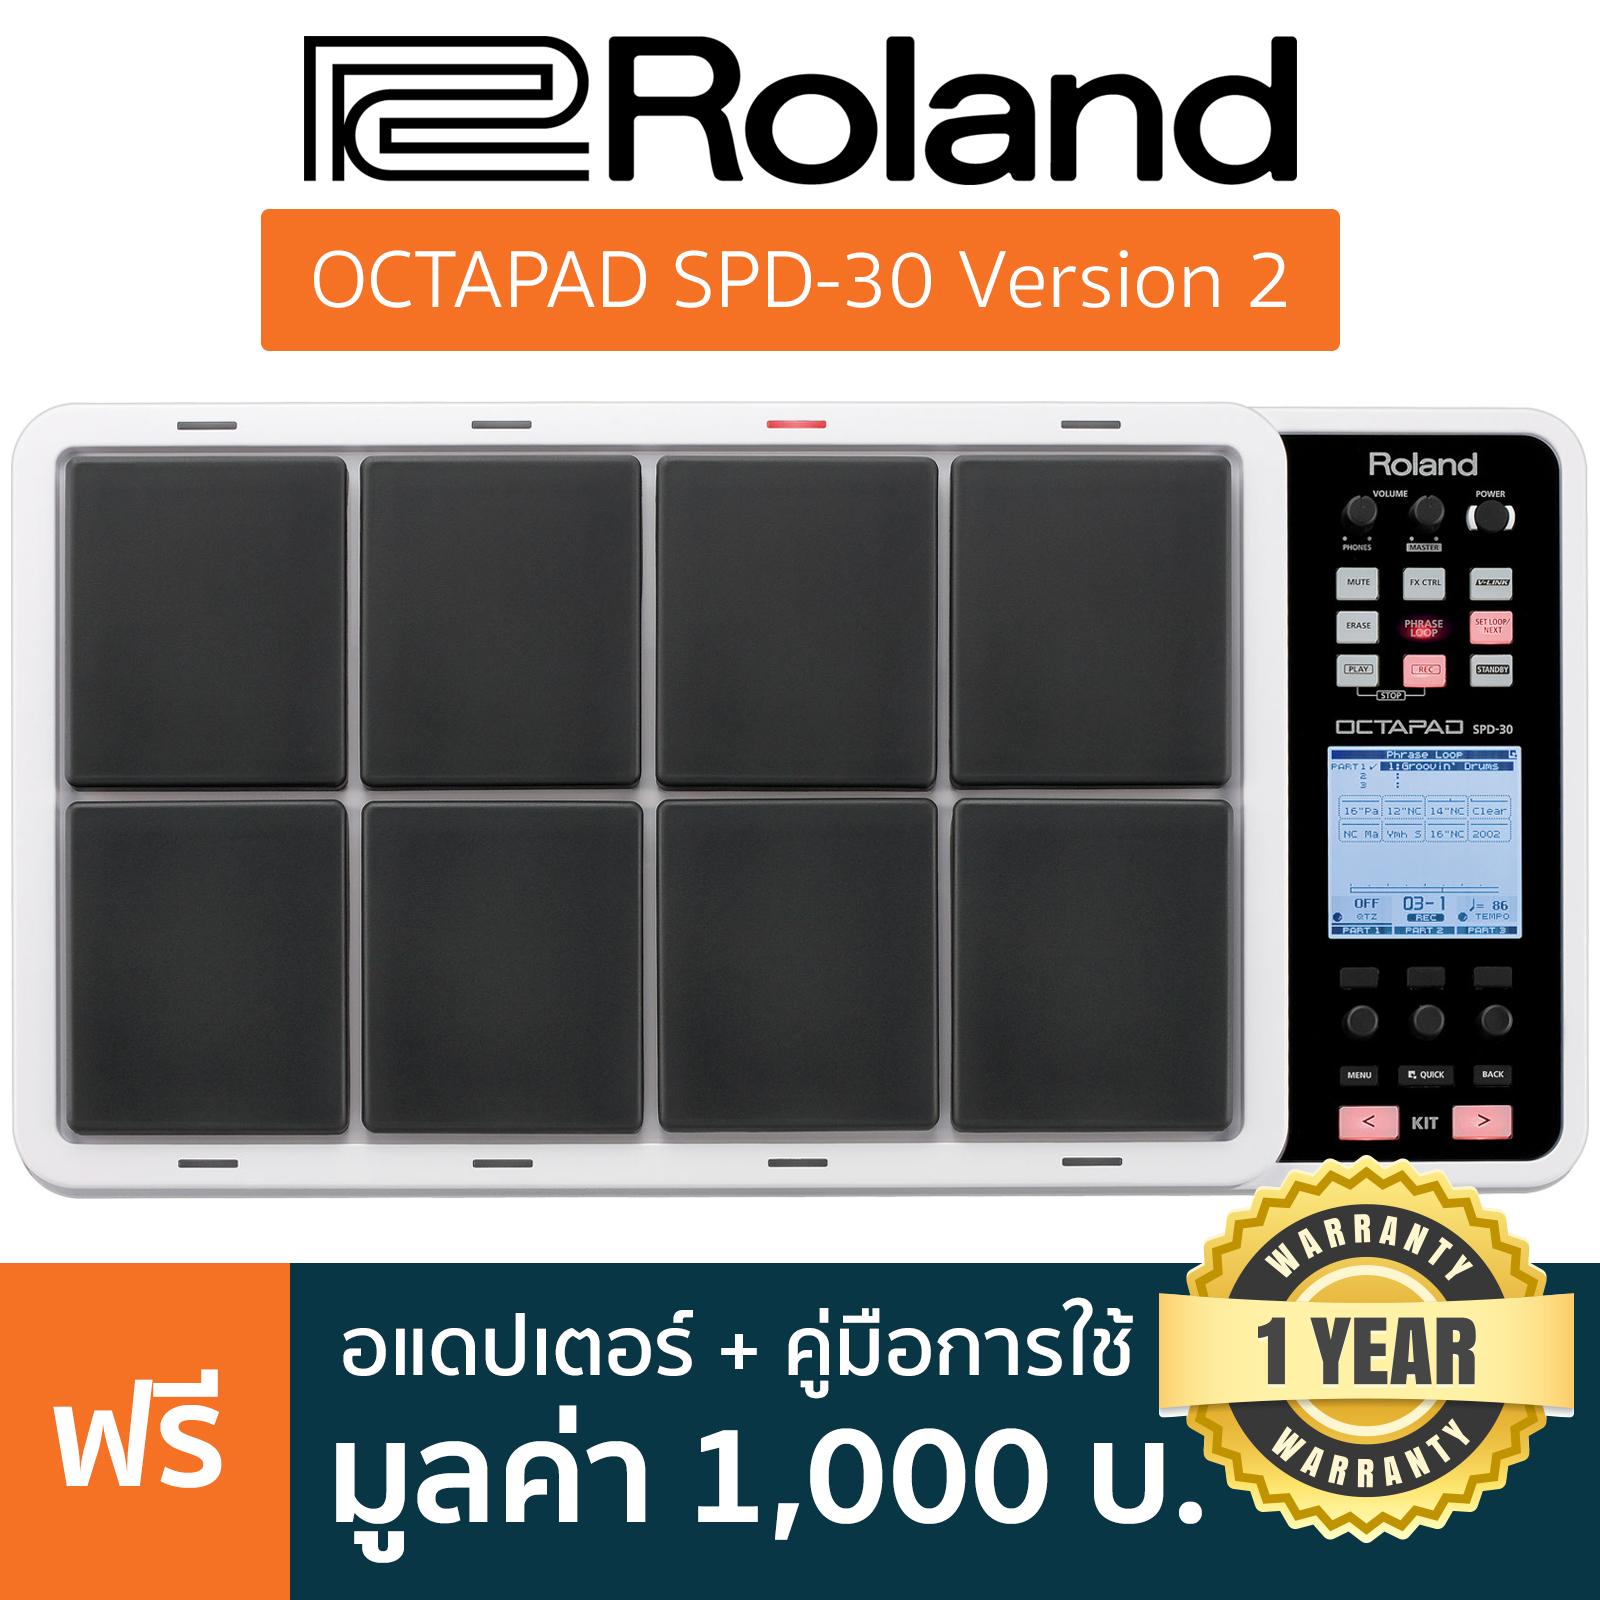 Roland® Octapad SPD-30 Version 2 กลองไฟฟ้าพกพา 8 แป้น 670 เสียง จังหวะกลอง 99 แบบ พร้อมมัลติเอฟเฟค + แถมฟรีอะแดปเตอร์ & สกรู & คู่มือ **ประกันศูนย์ 1 ปี**